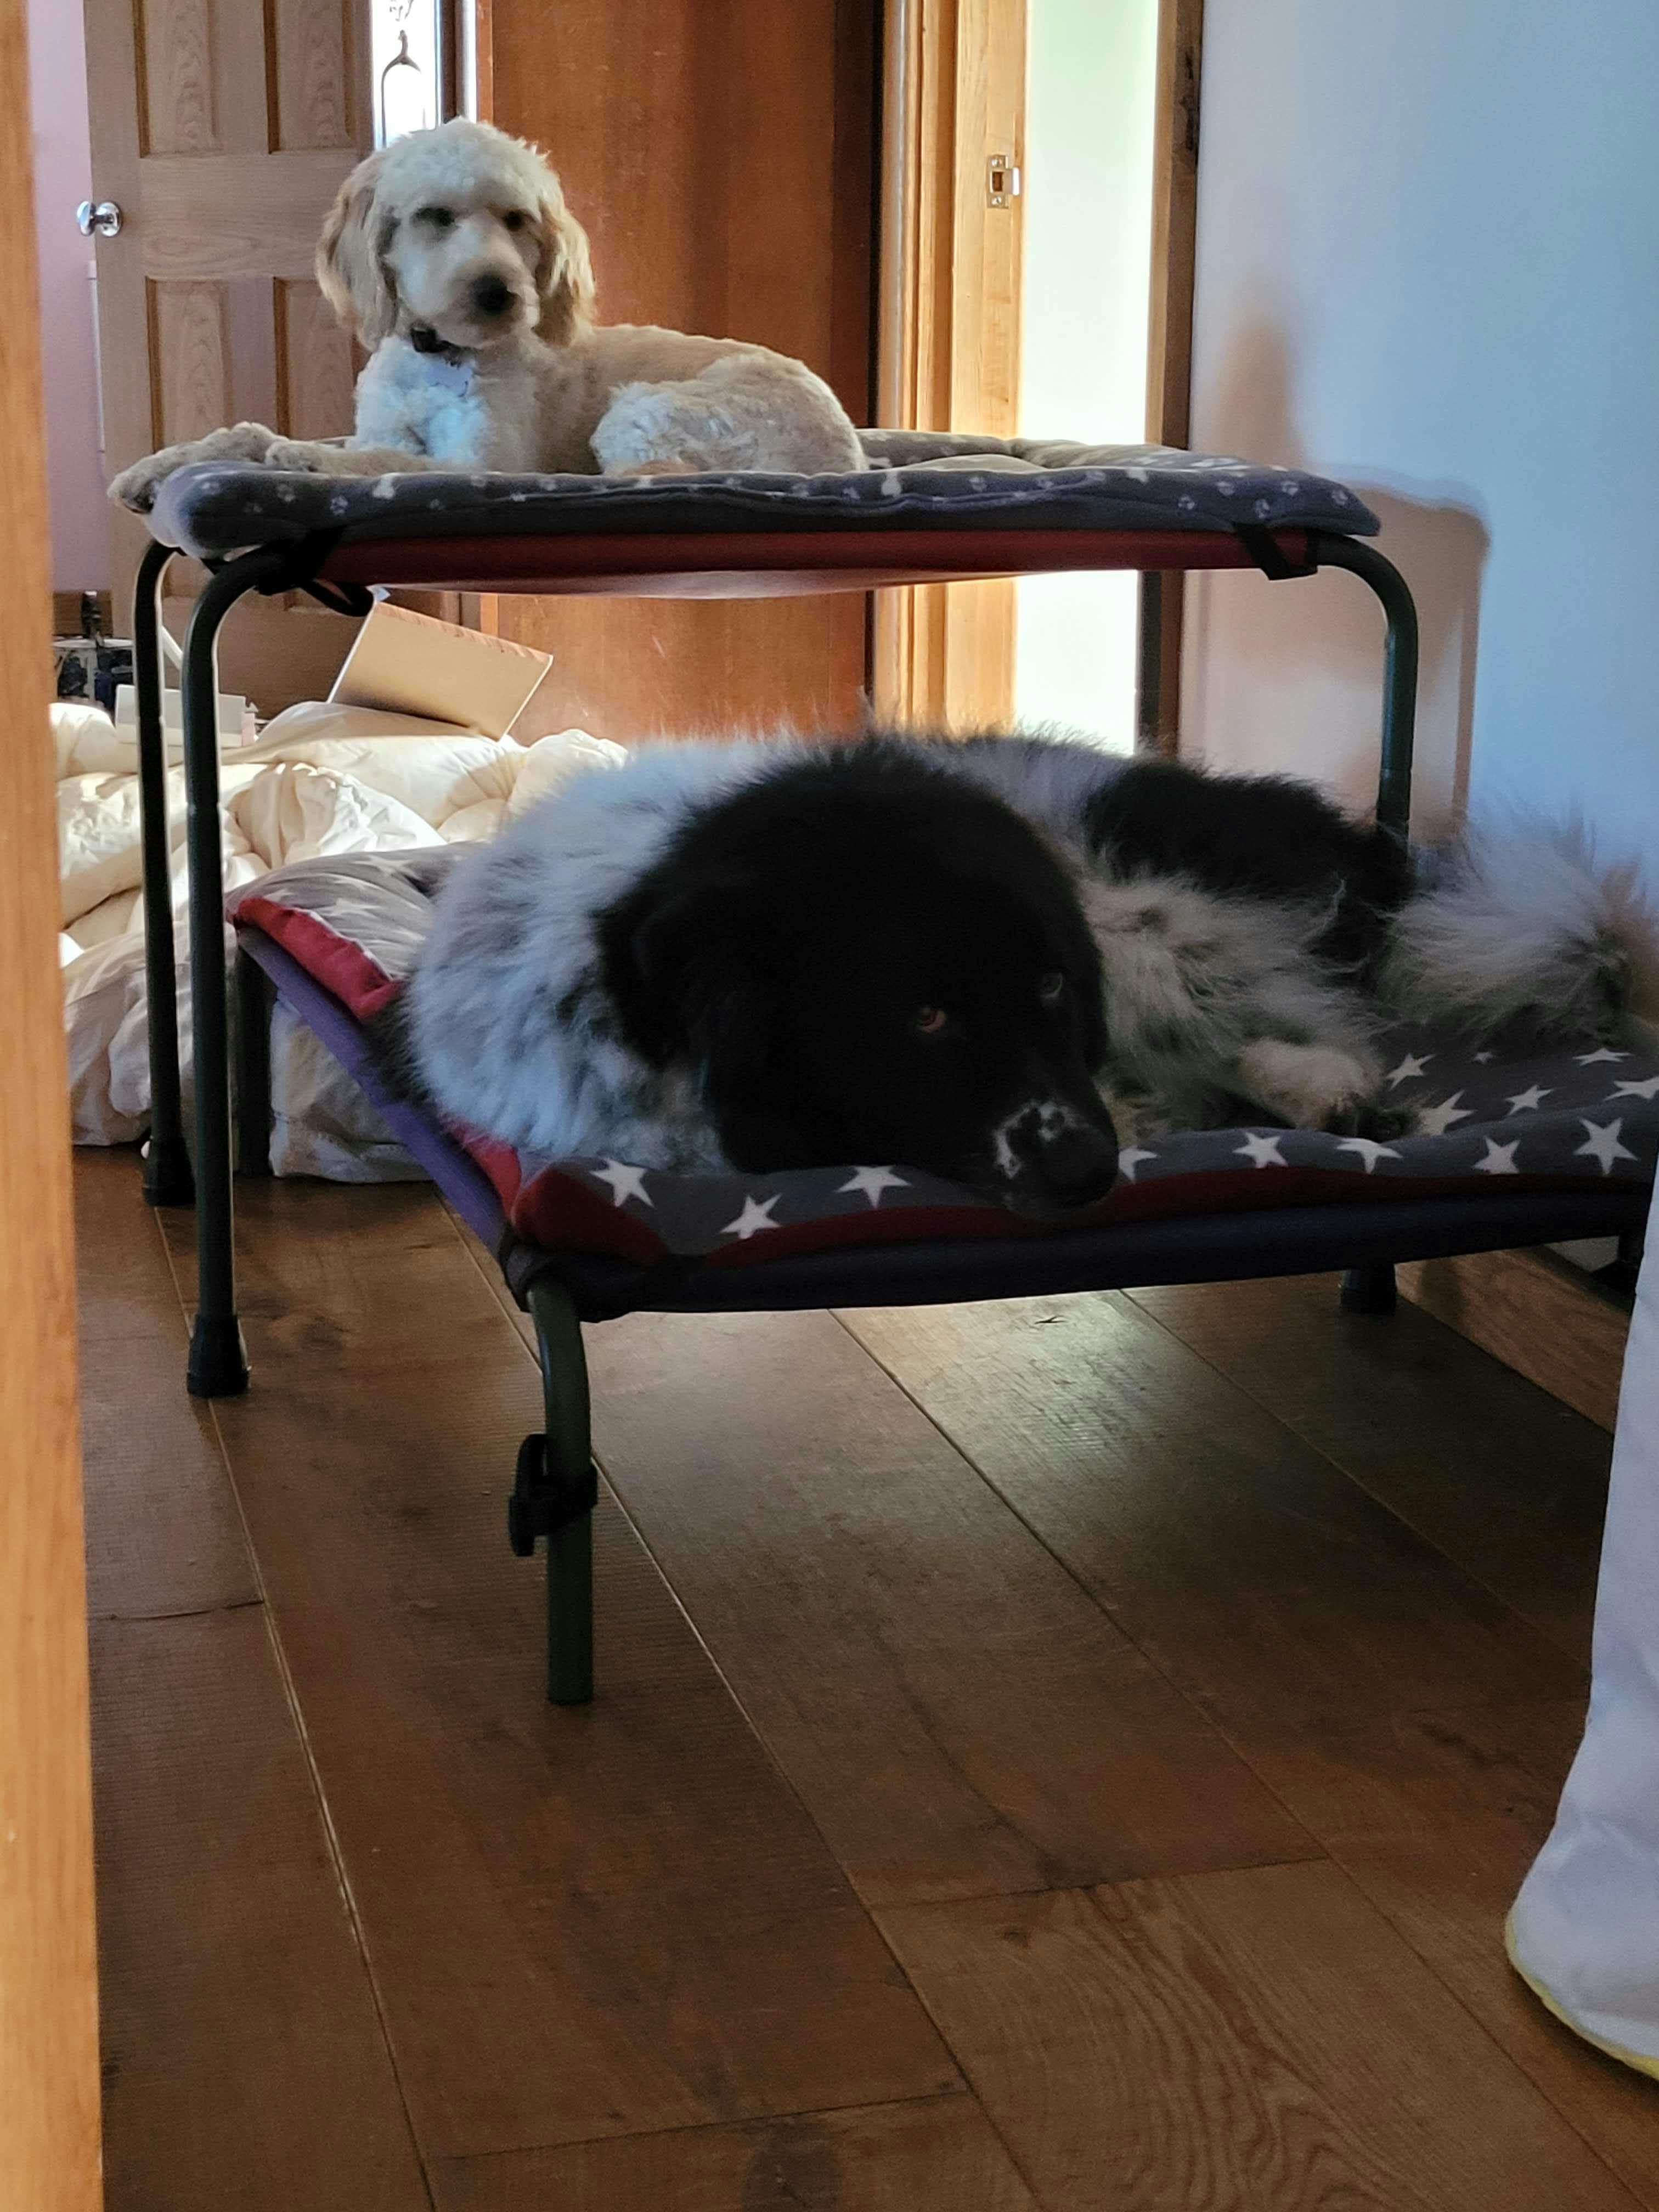 HiK9 dog bunk beds